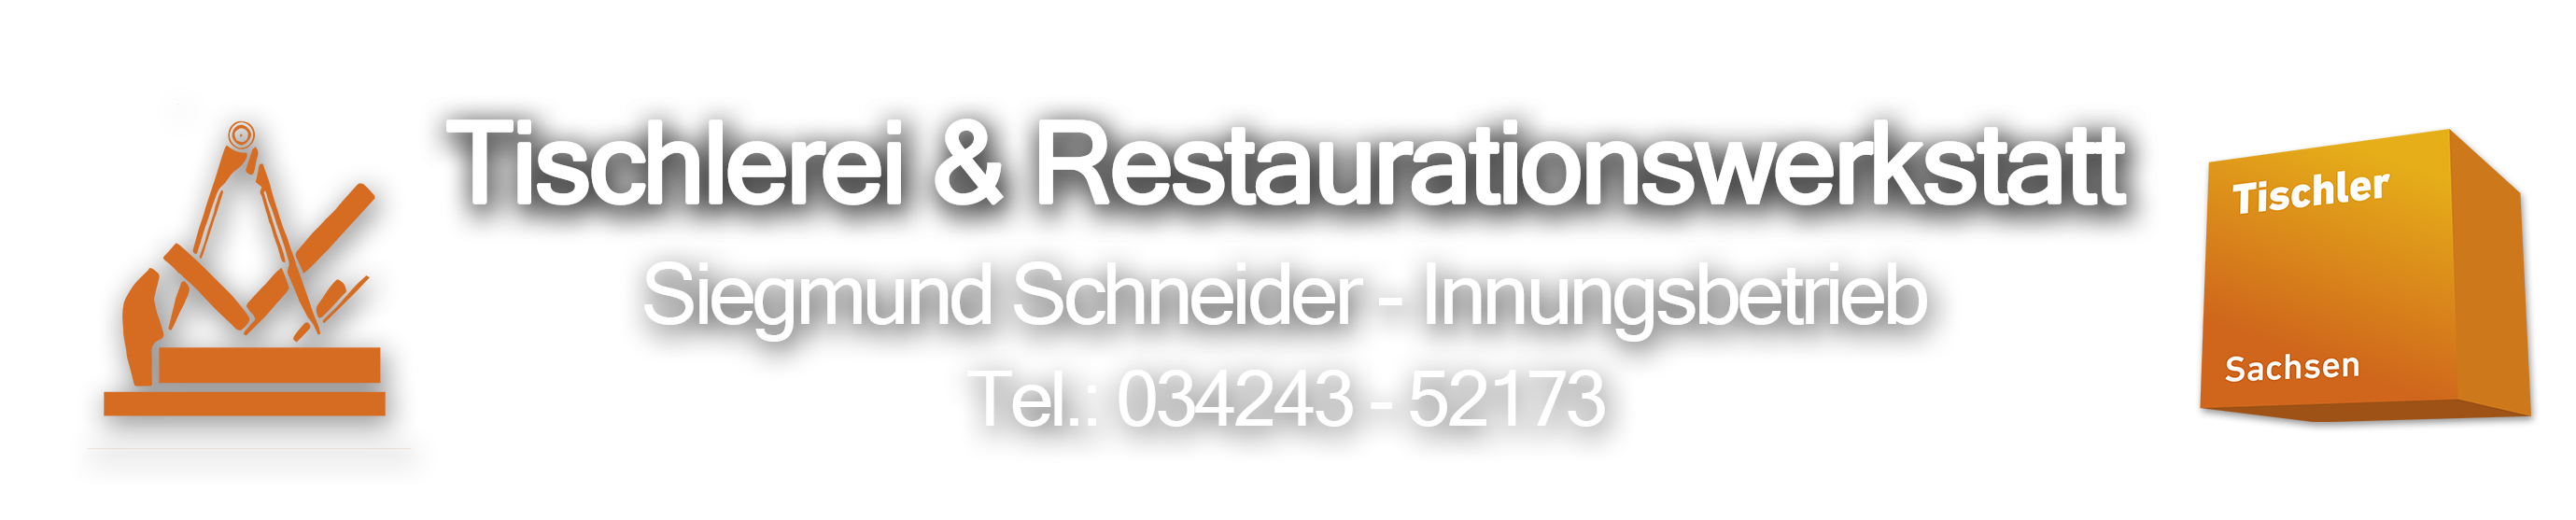 Tischlerei & Restaurationswerkstatt Sigmund Schneider